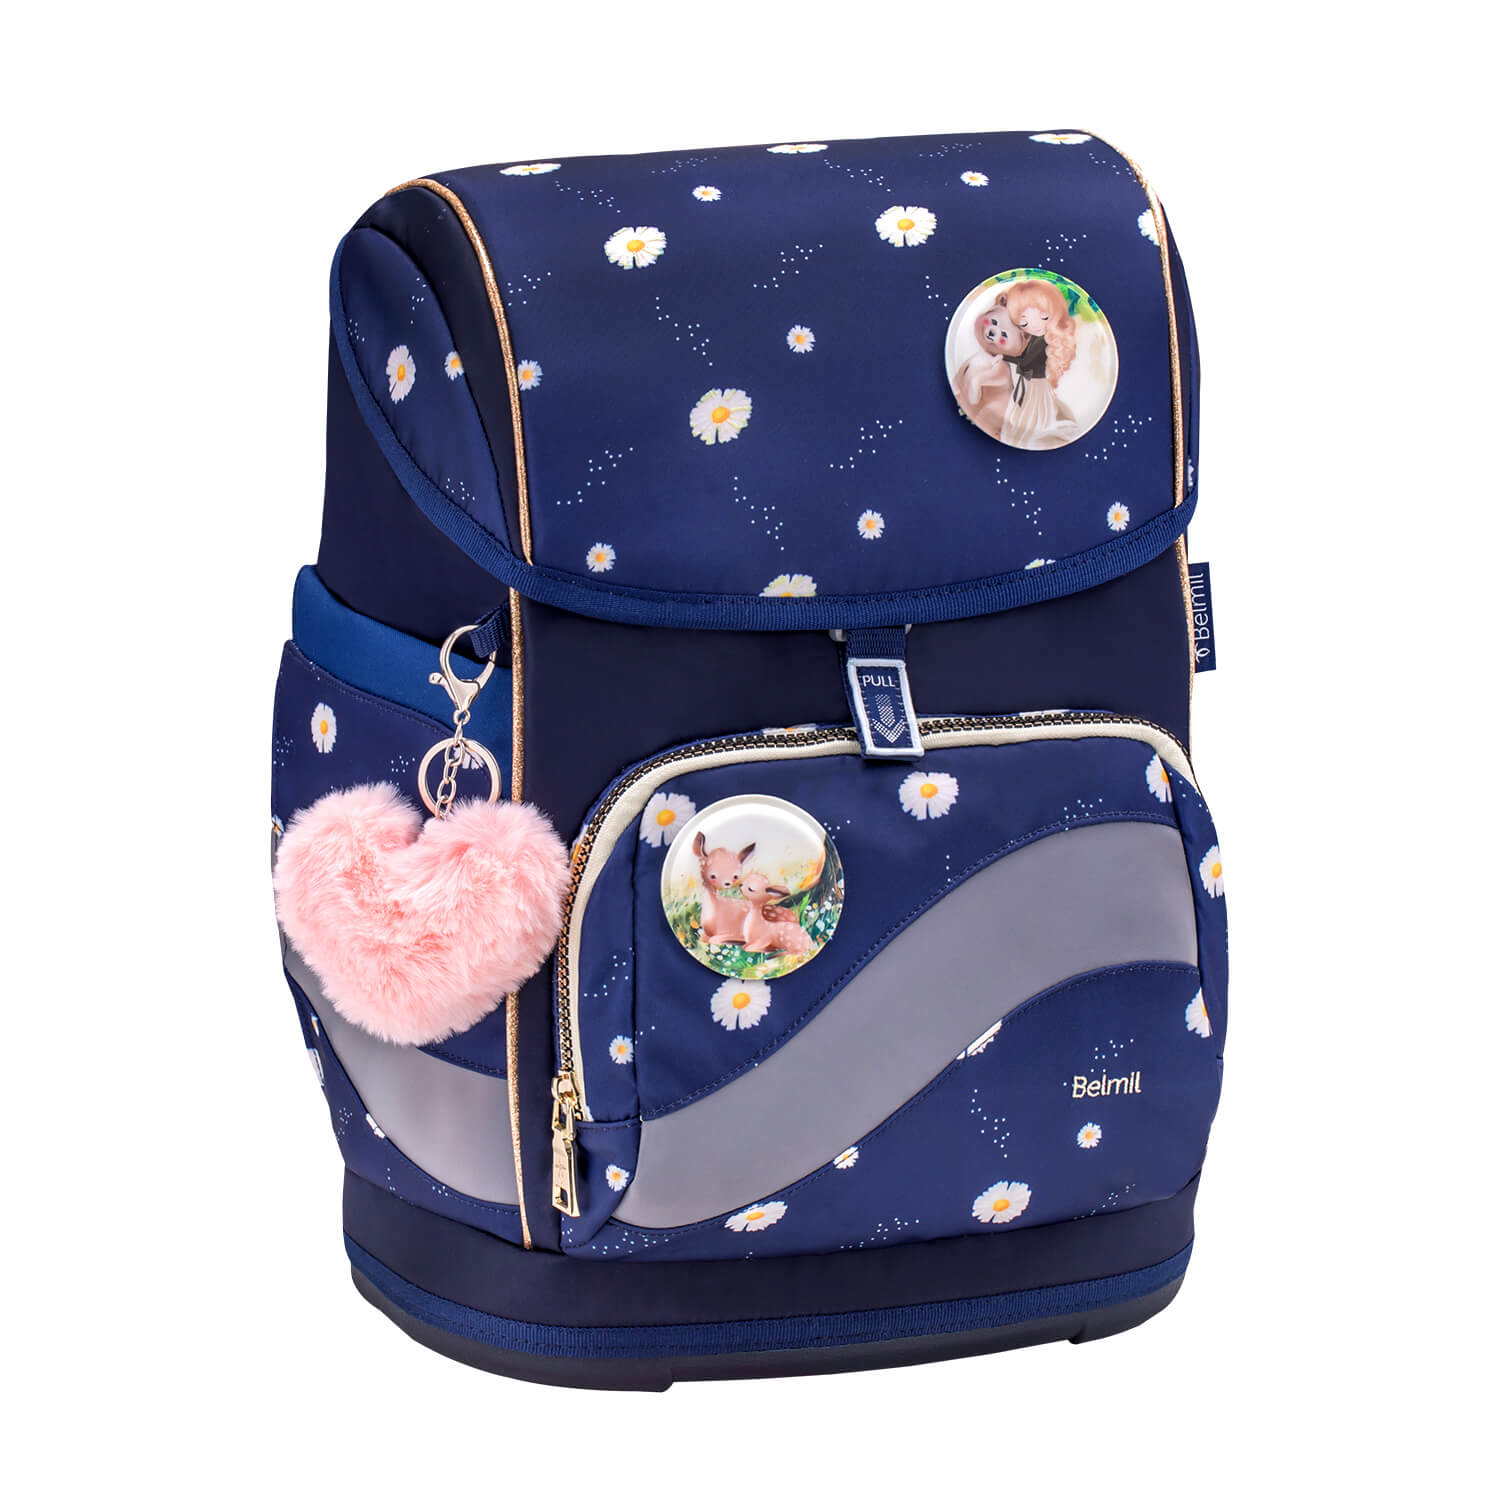 Smarty Plus Daisy Schoolbag